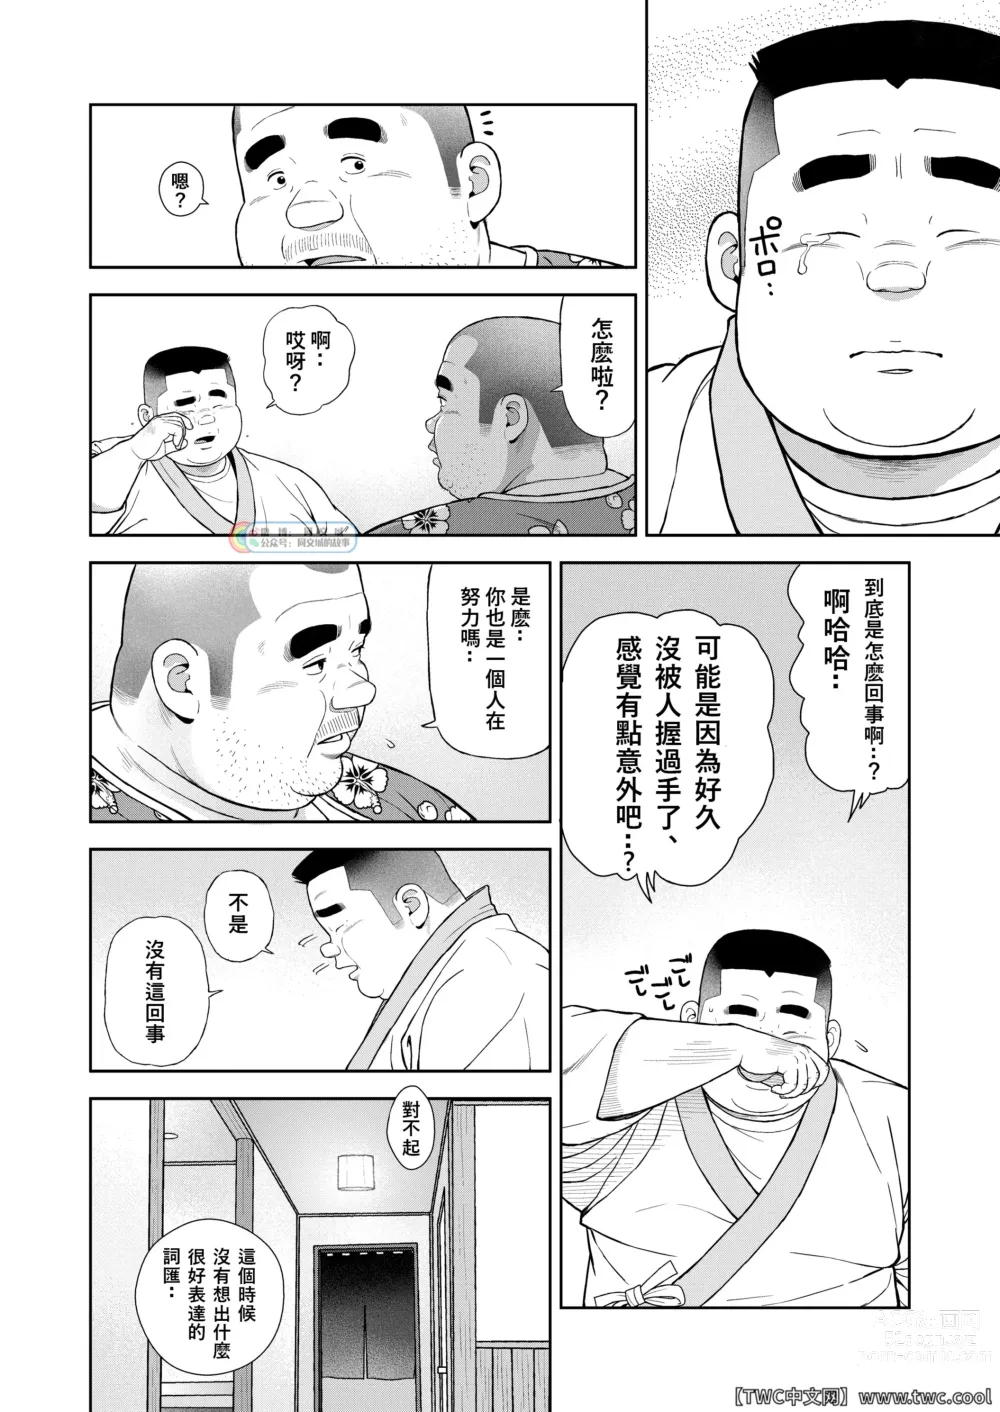 Page 12 of doujinshi Kunoyu Nijyukyuuhatsume Tamago No Namida